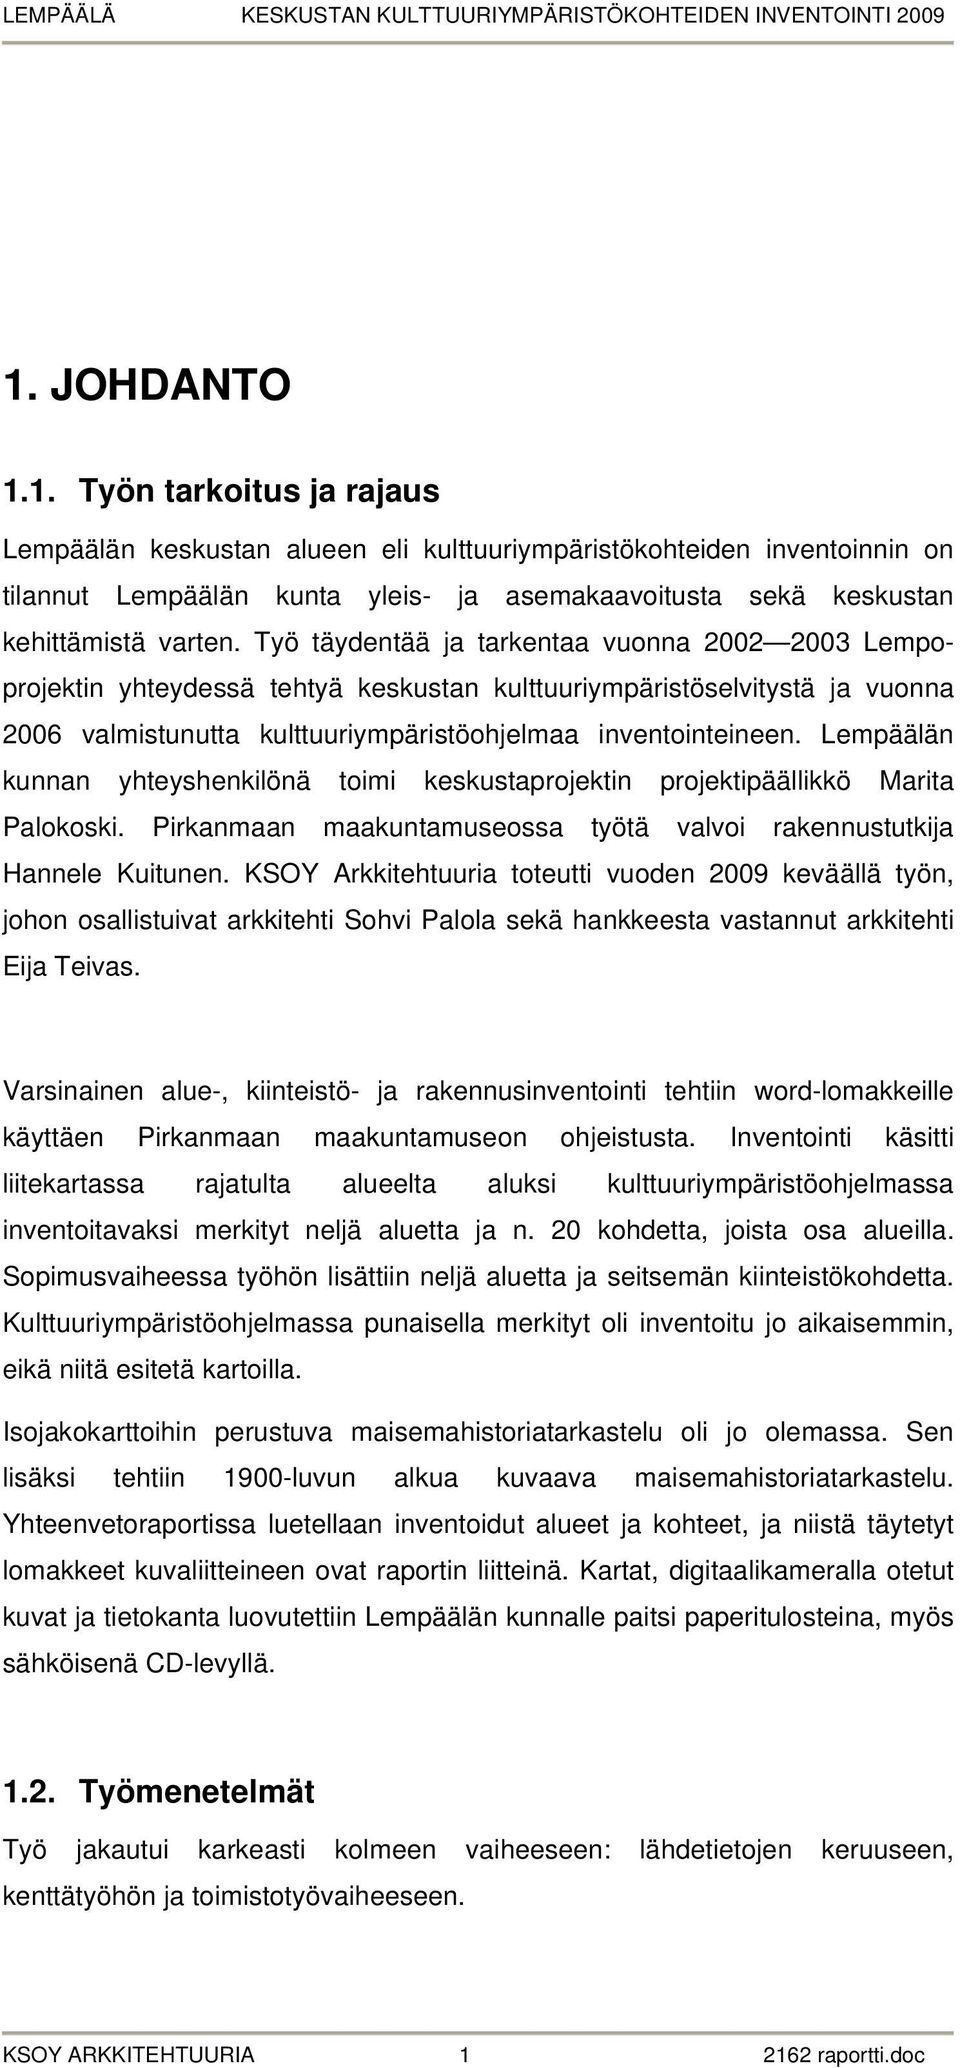 Lempäälän kunnan yhteyshenkilönä toimi keskustaprojektin projektipäällikkö Marita Palokoski. Pirkanmaan maakuntamuseossa työtä valvoi rakennustutkija Hannele Kuitunen.